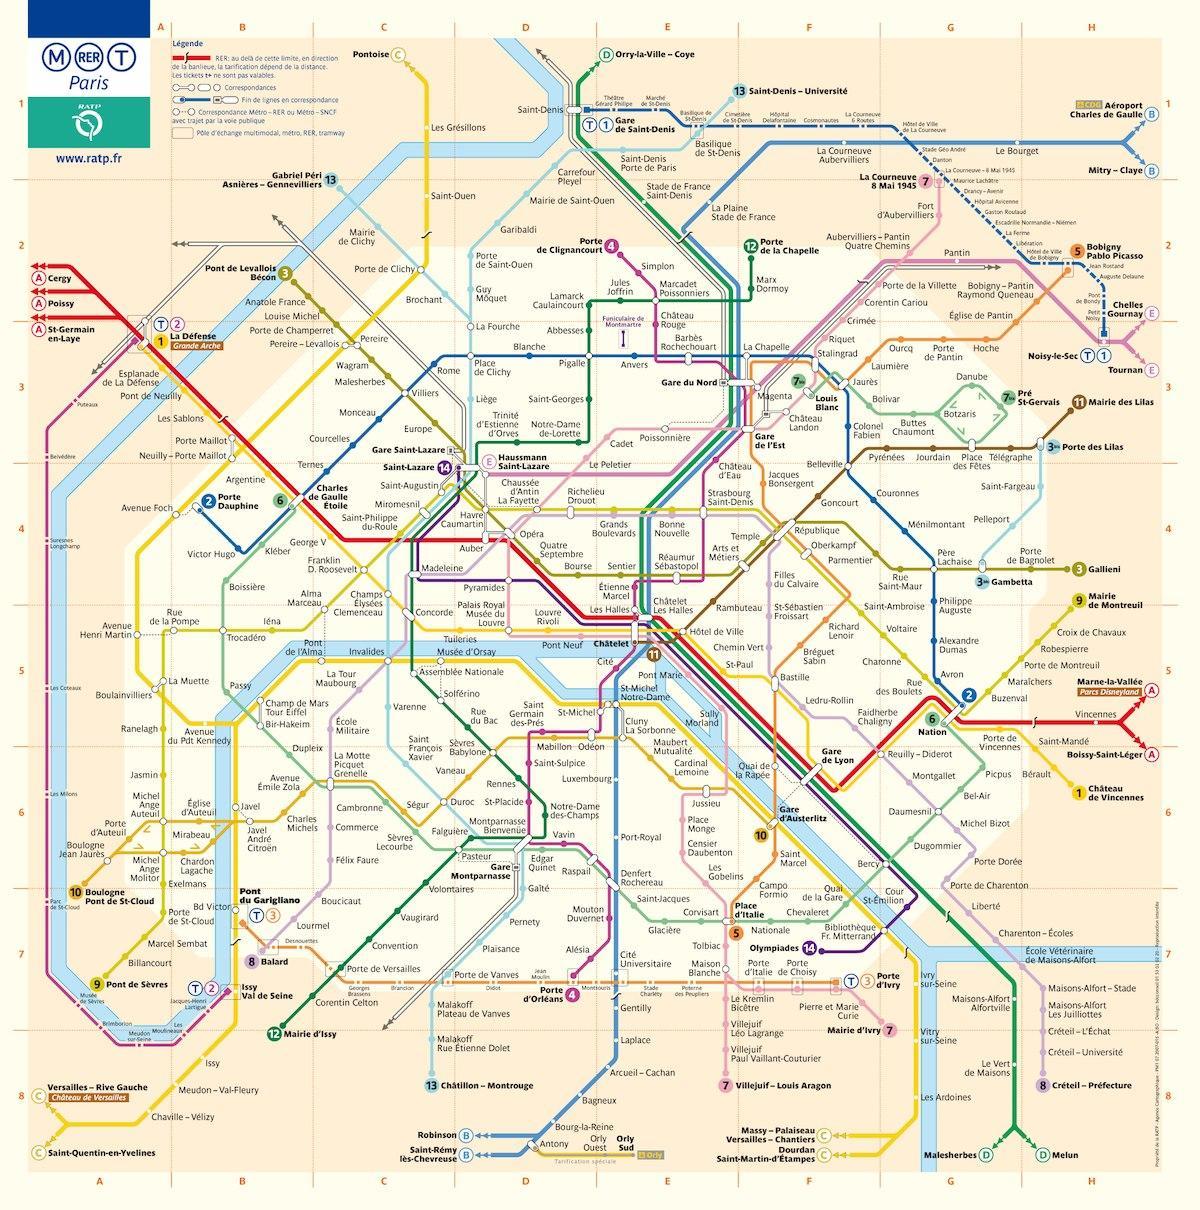 washington dc metro hartă cu străzi